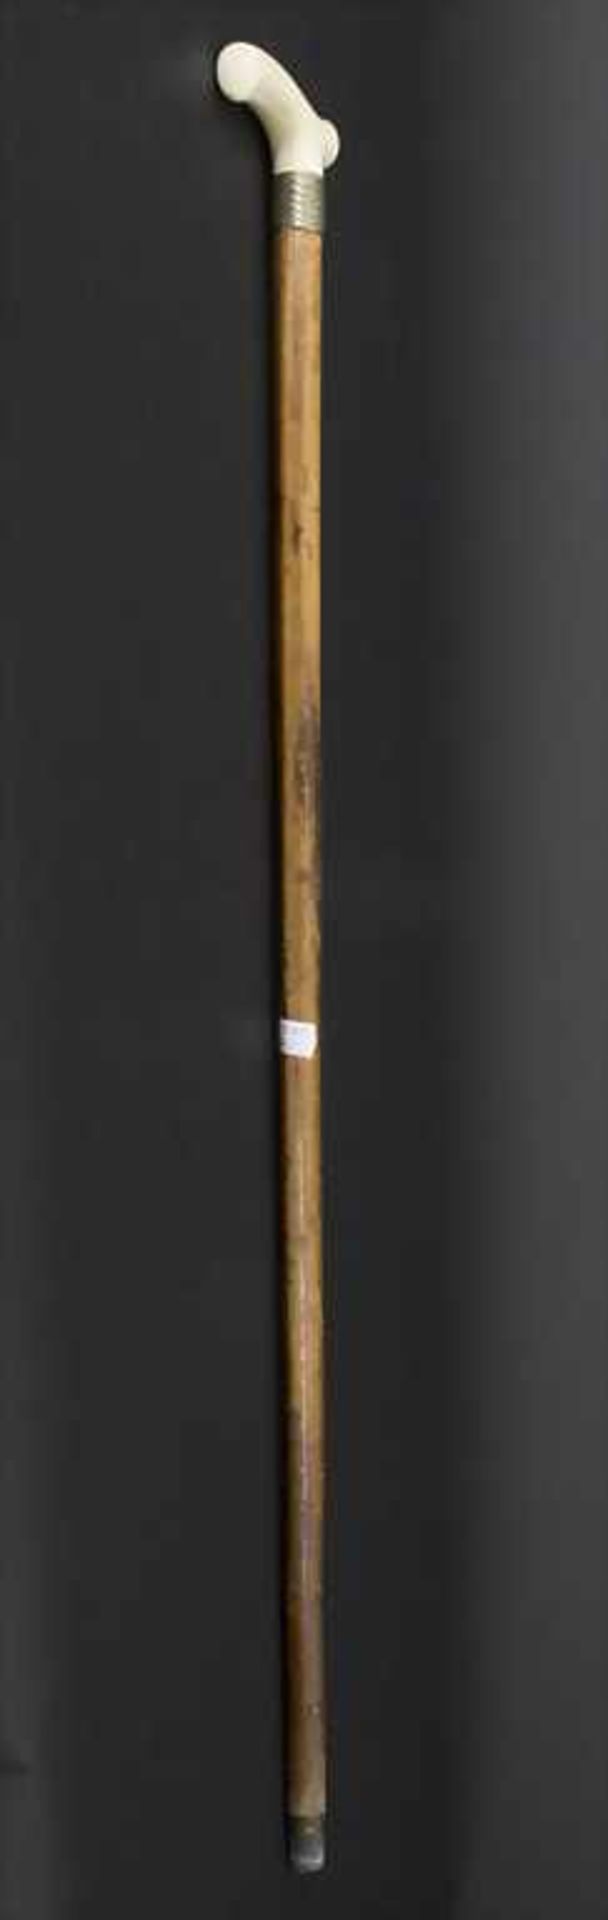 Gehstock mit Ziermonogramm / A cane with monogram, um 1900Material: Malaccarohr (Schuss), Elfenbein, - Bild 6 aus 6